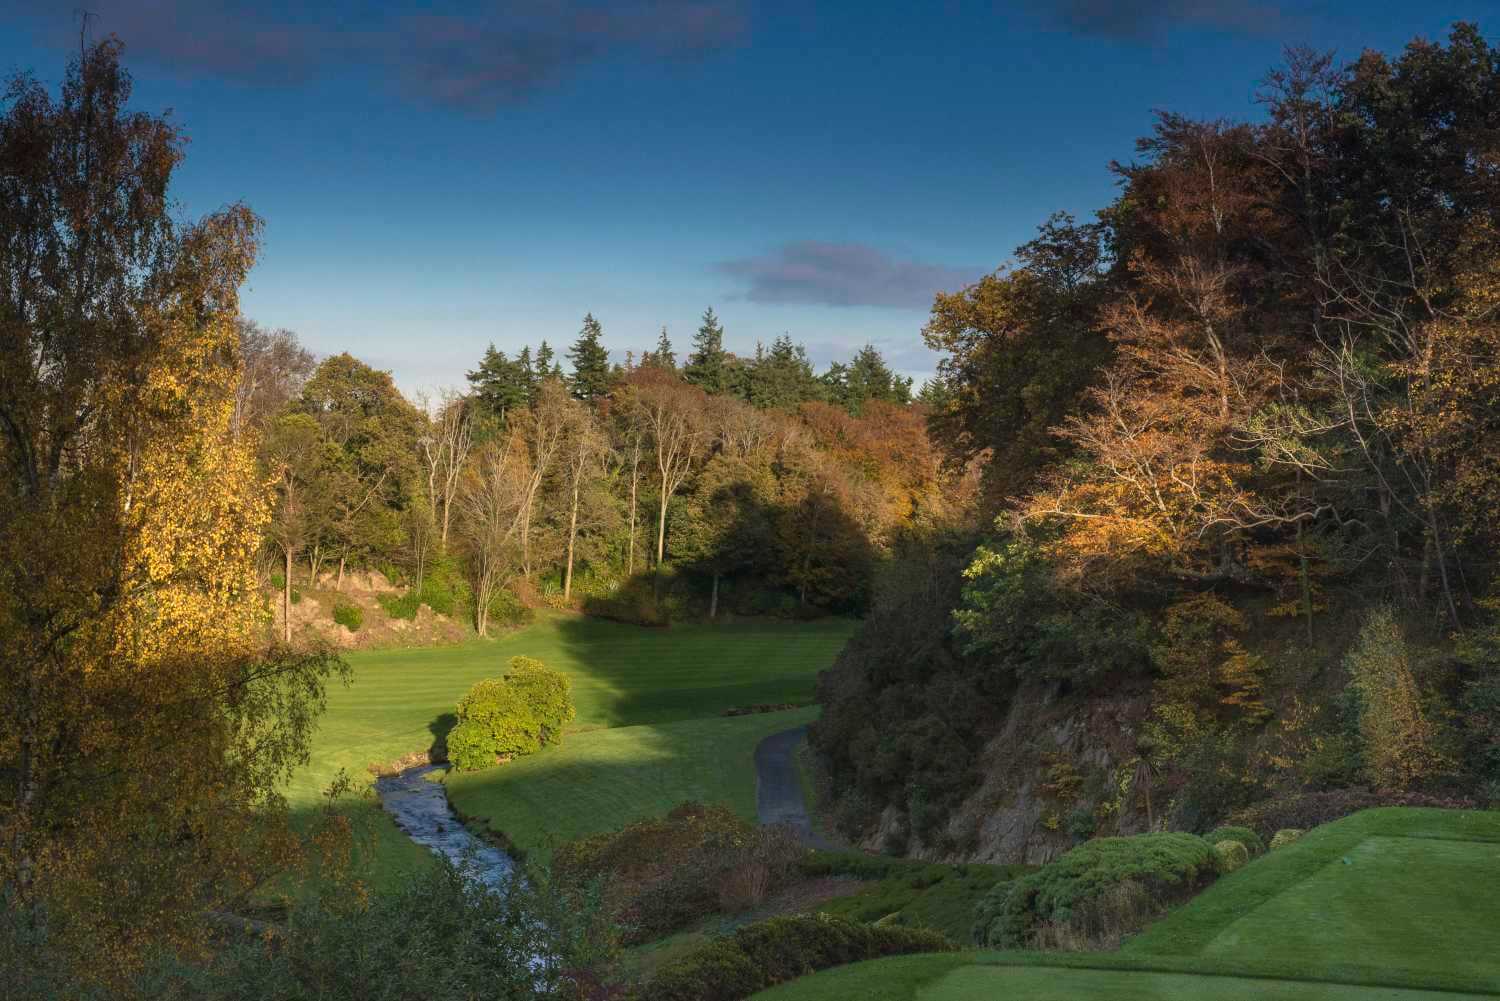 Druids Glen Golf Course